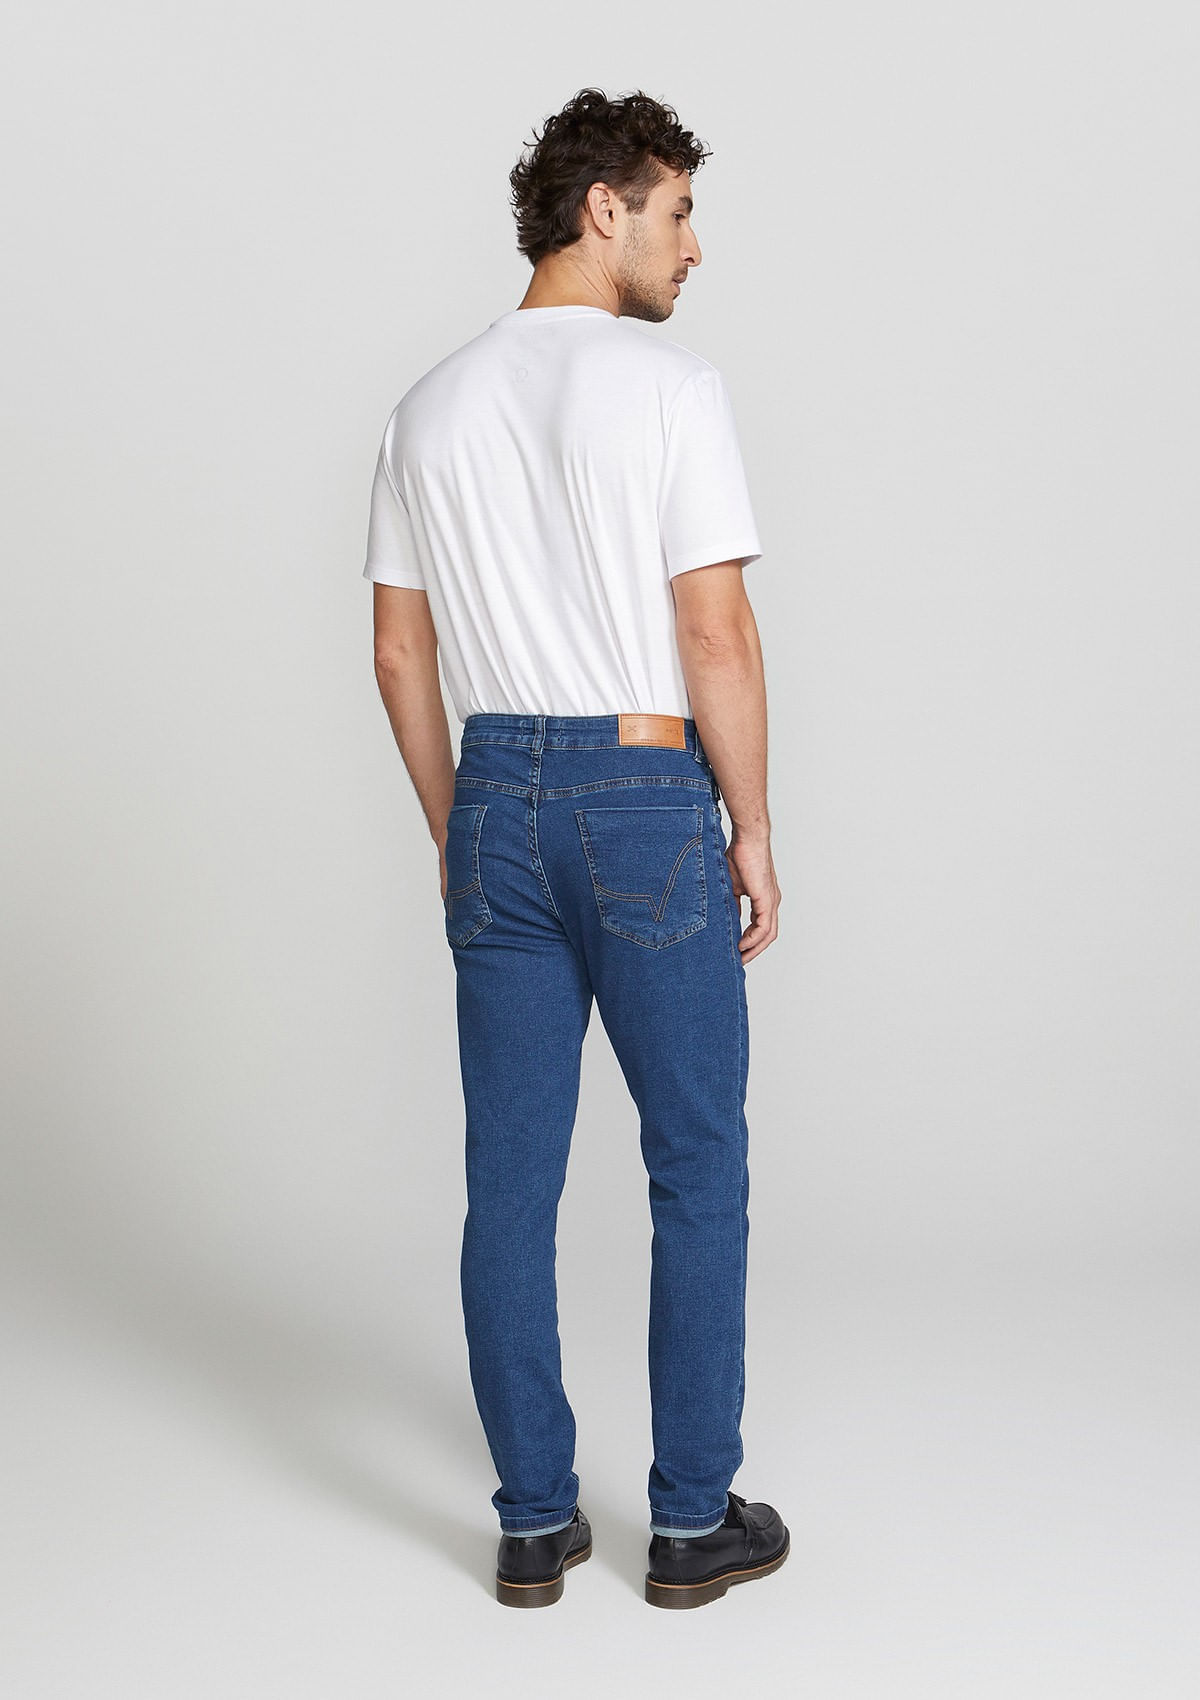 Calça Jeans Masculino Moletom Com Elastano Skinny - Hering Store